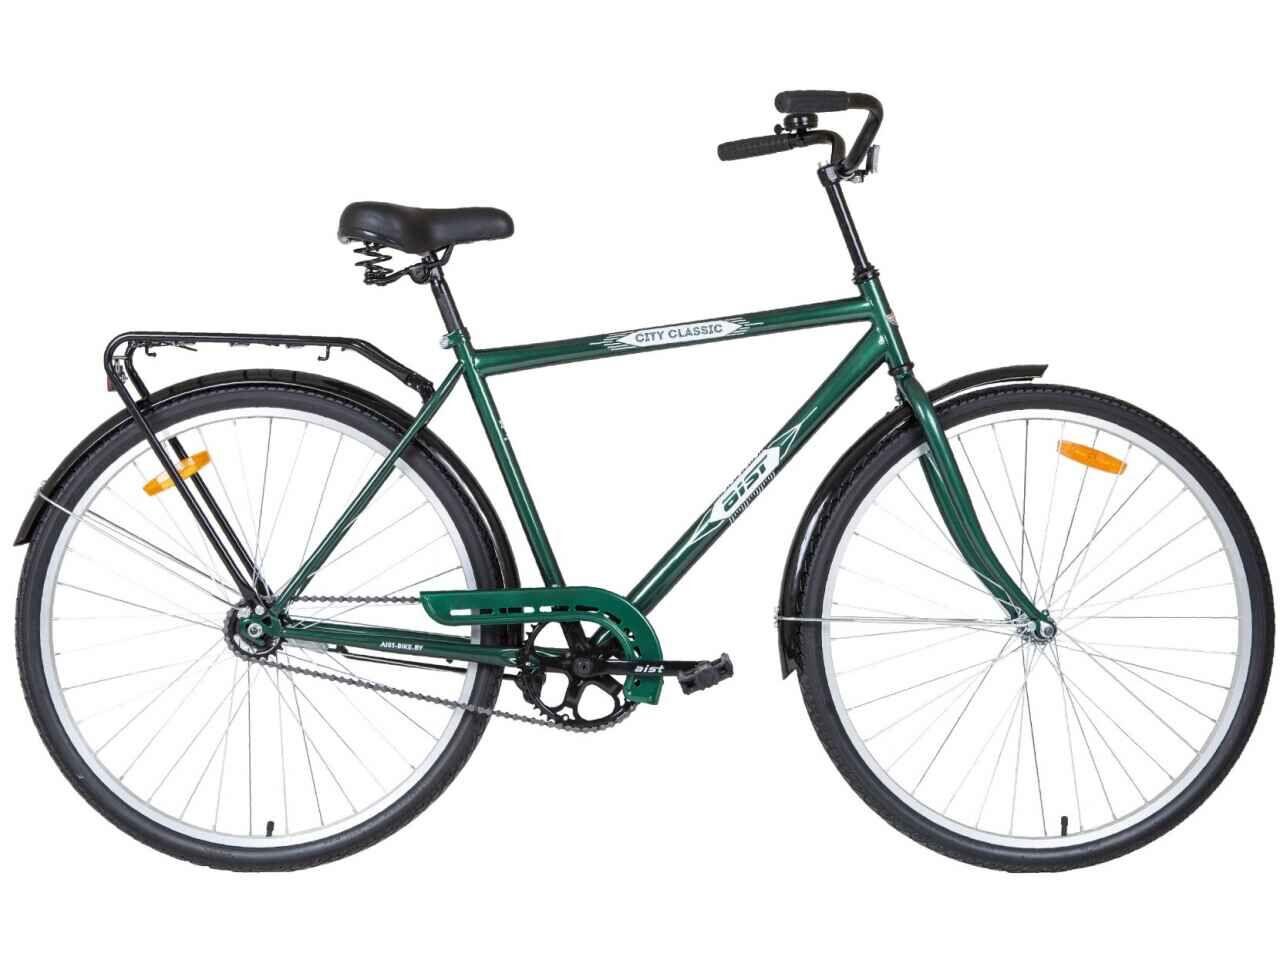 Велосипед АІСТ 28-130 / AIST City classic /Зелений  / Жіночий ,дорожній, міський (Товста рама) від RS AUTO